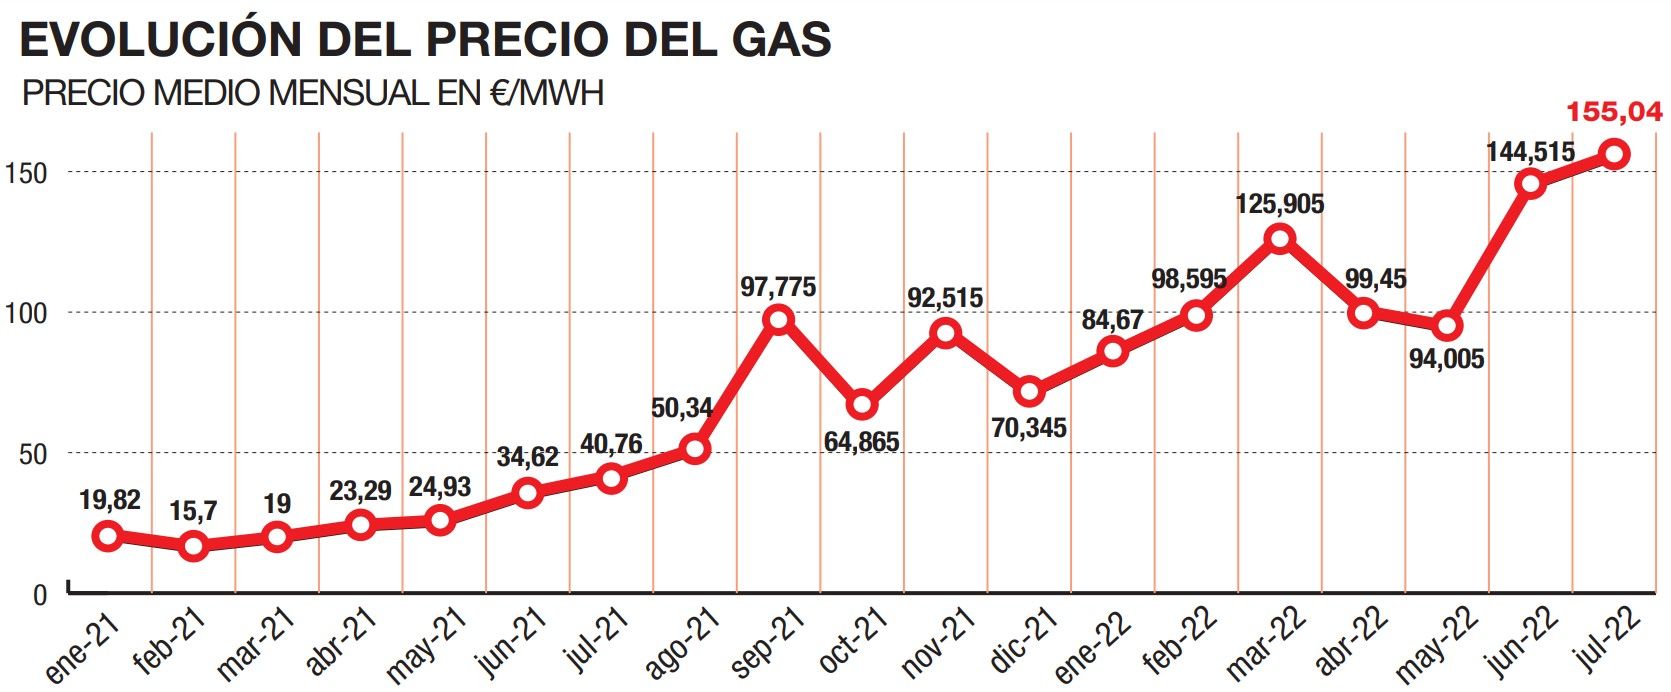 Evolución del precio del gas en el mercado TTF holandés.